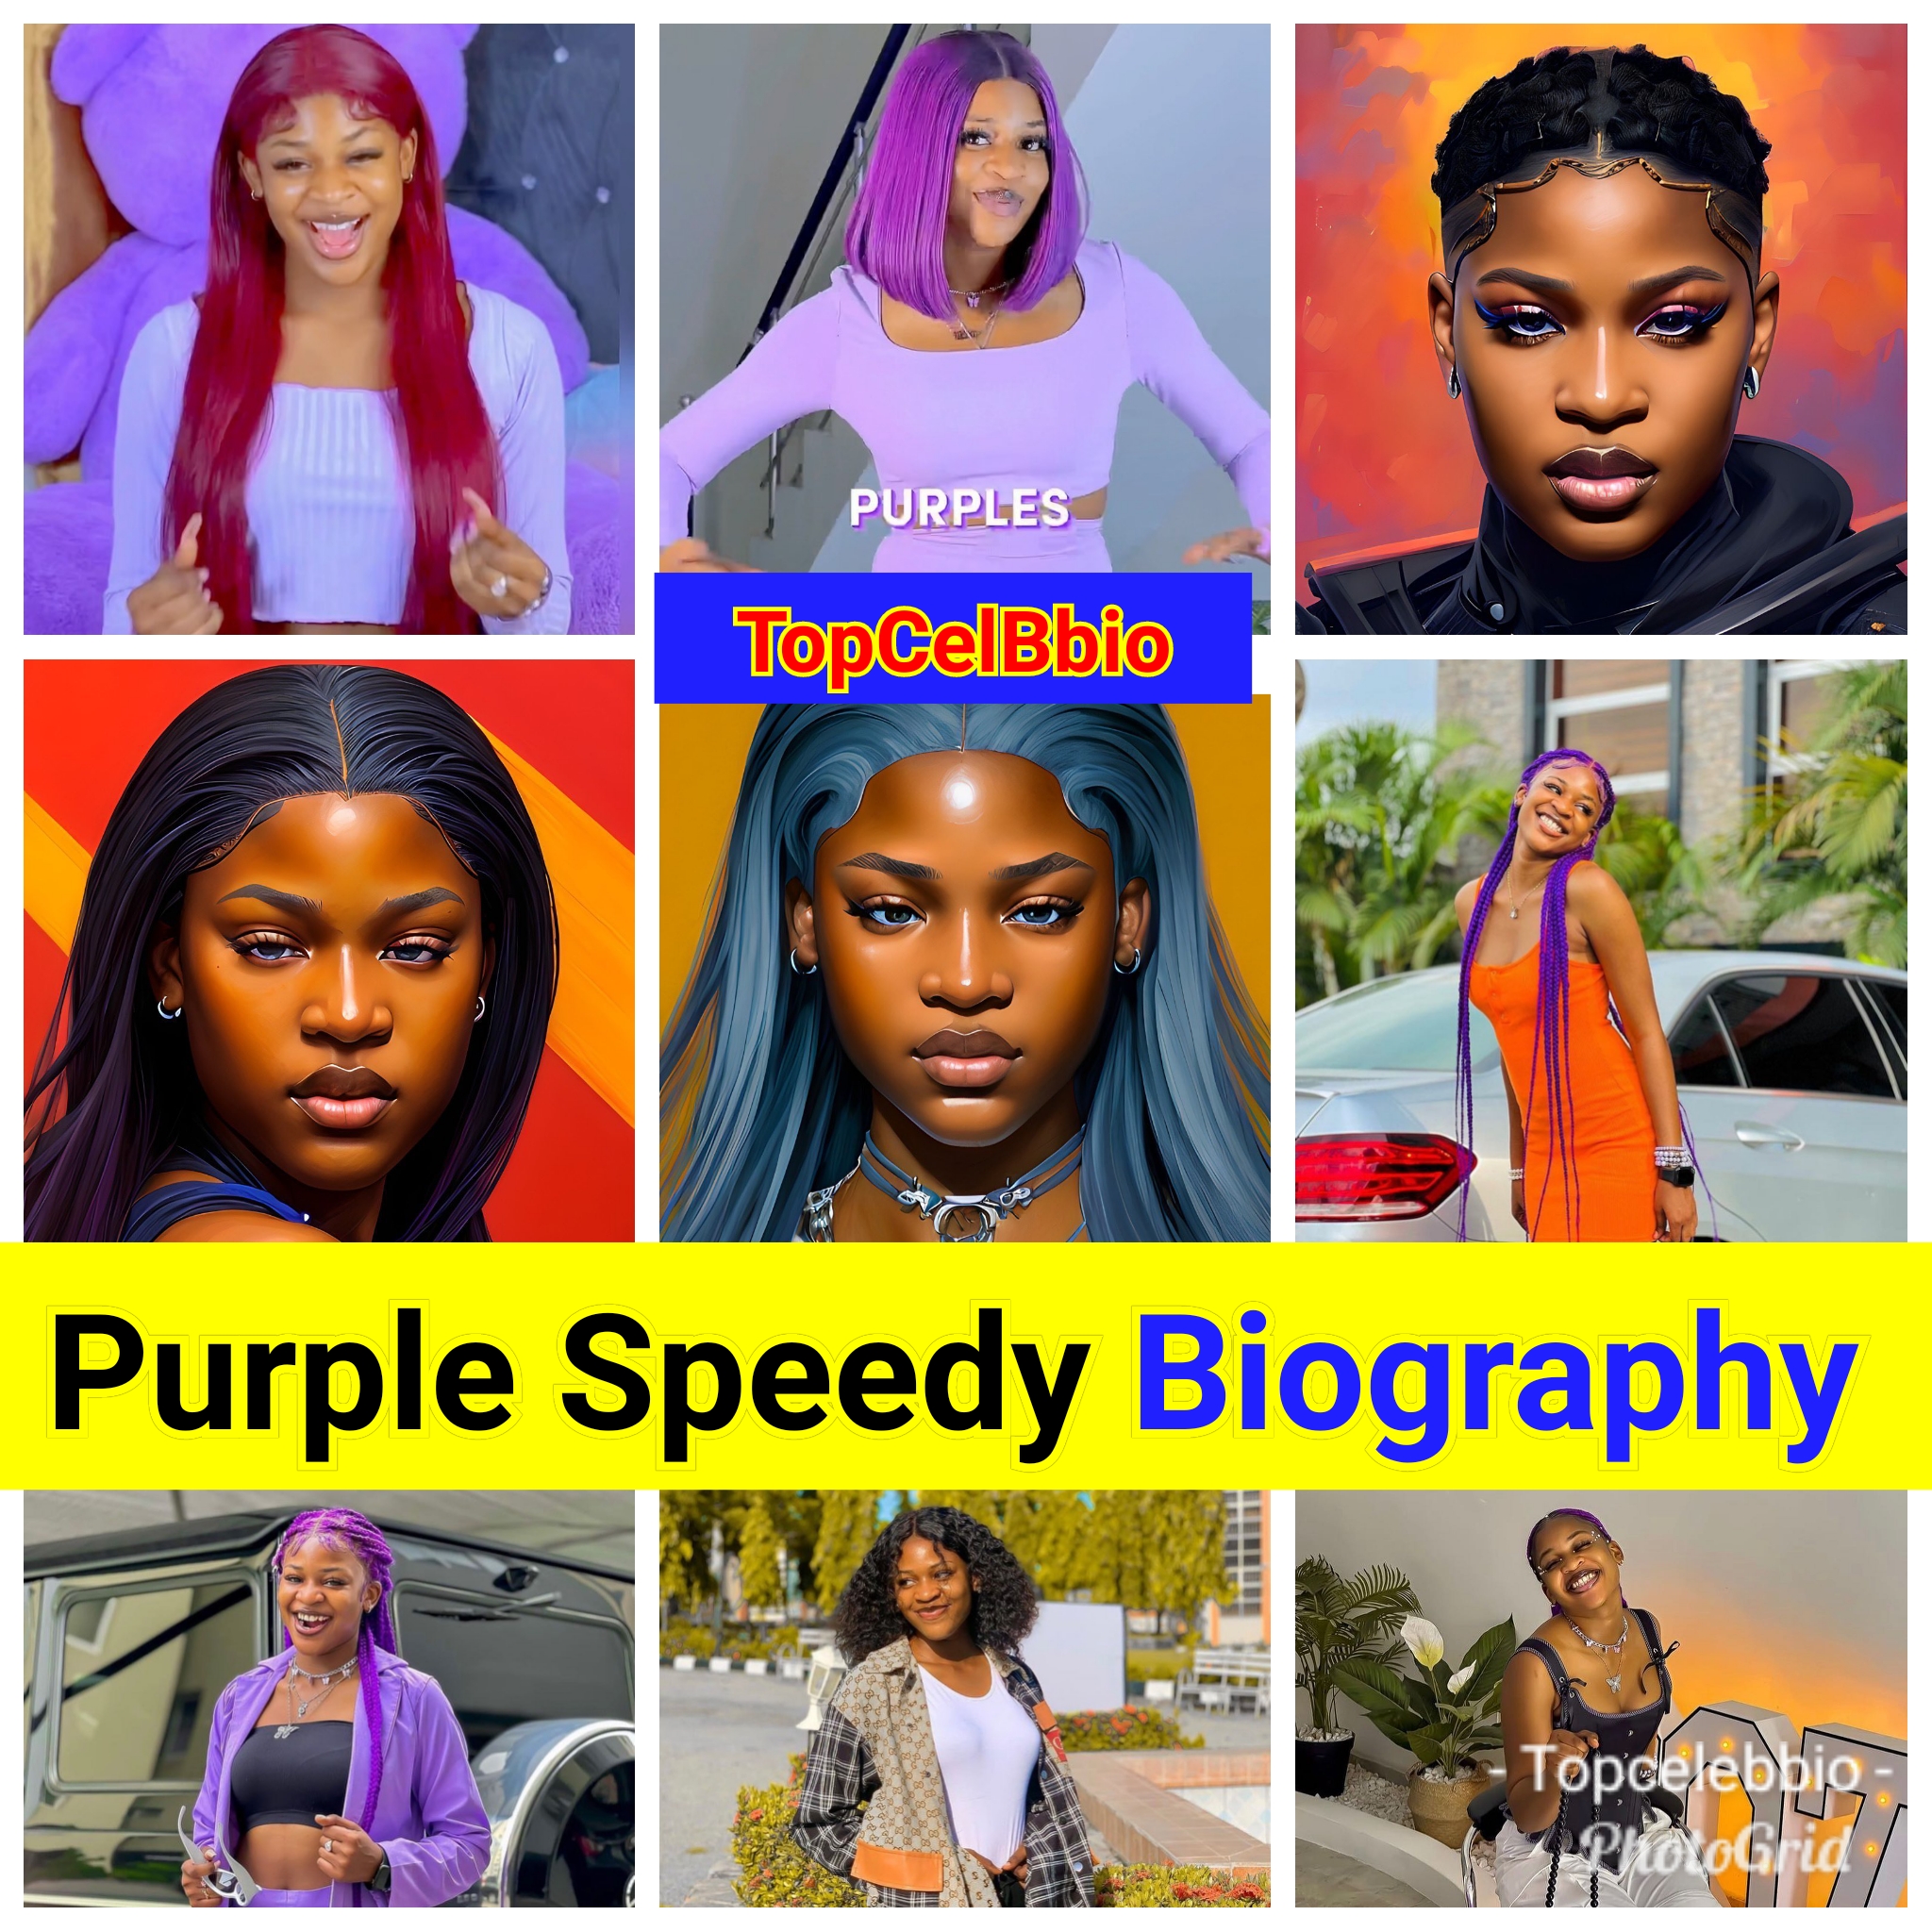 Biography of Purple Speedy on TikTok - Naija Celebrity